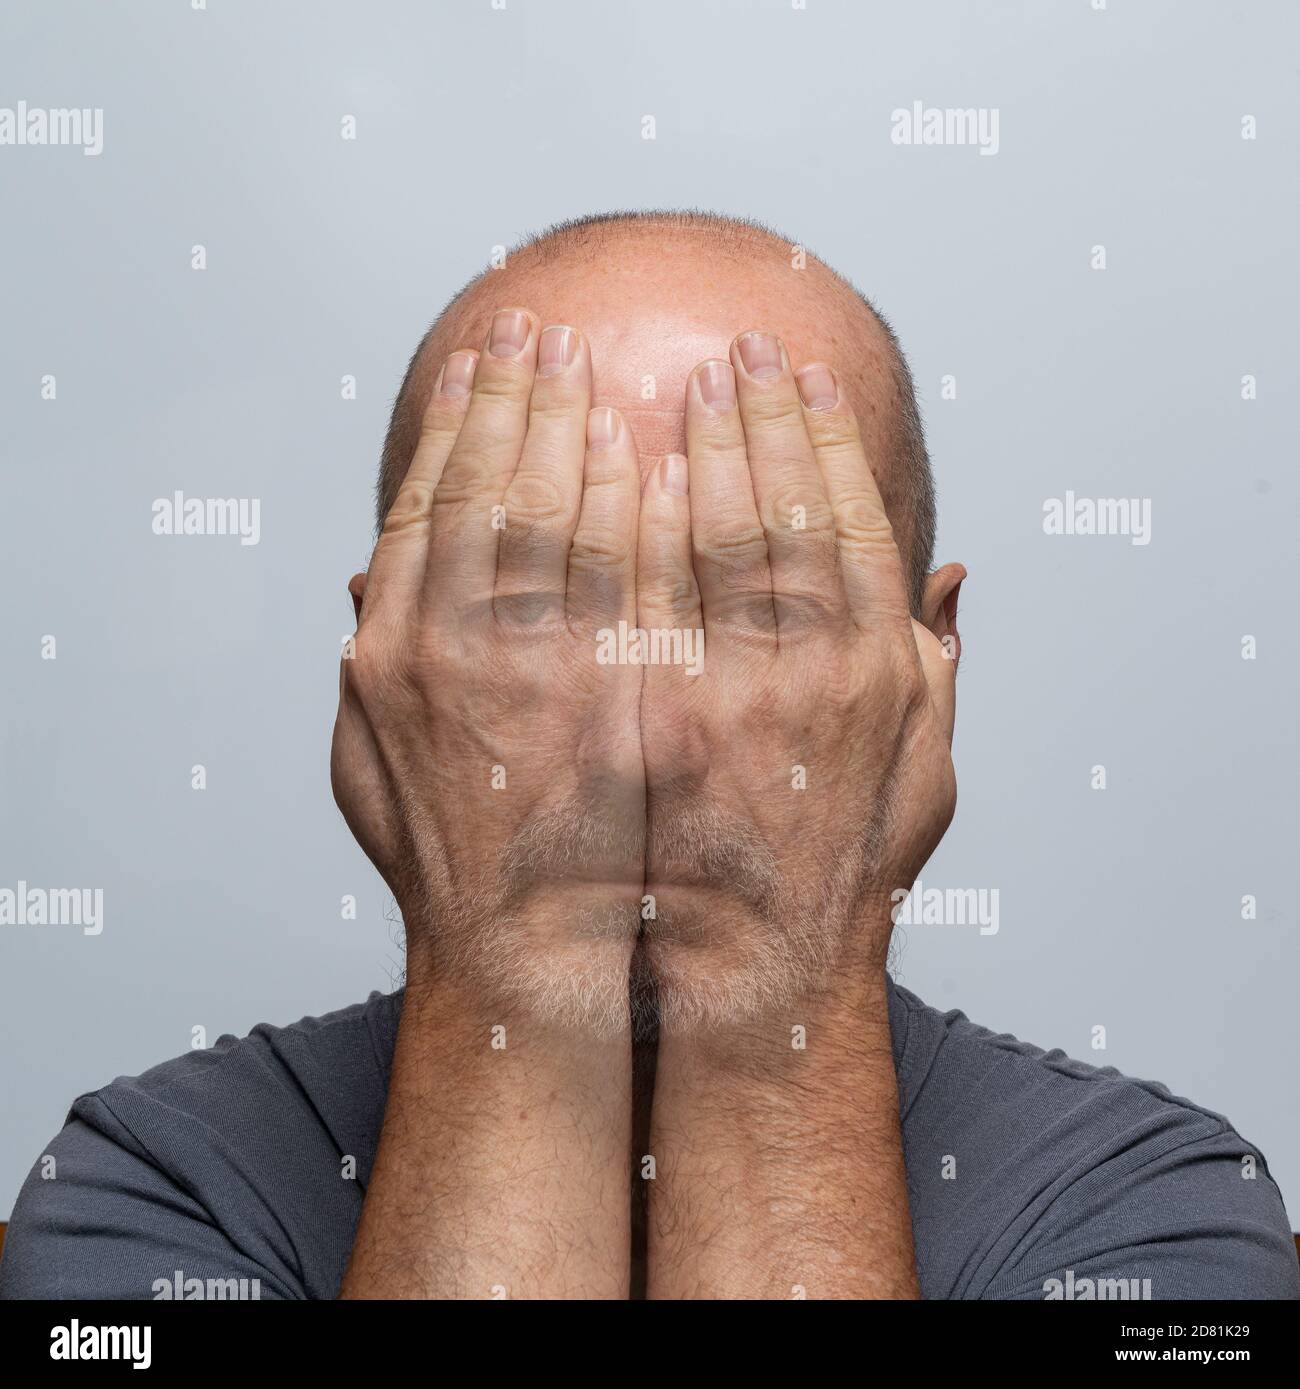 a man's gaze through his hands Stock Photo